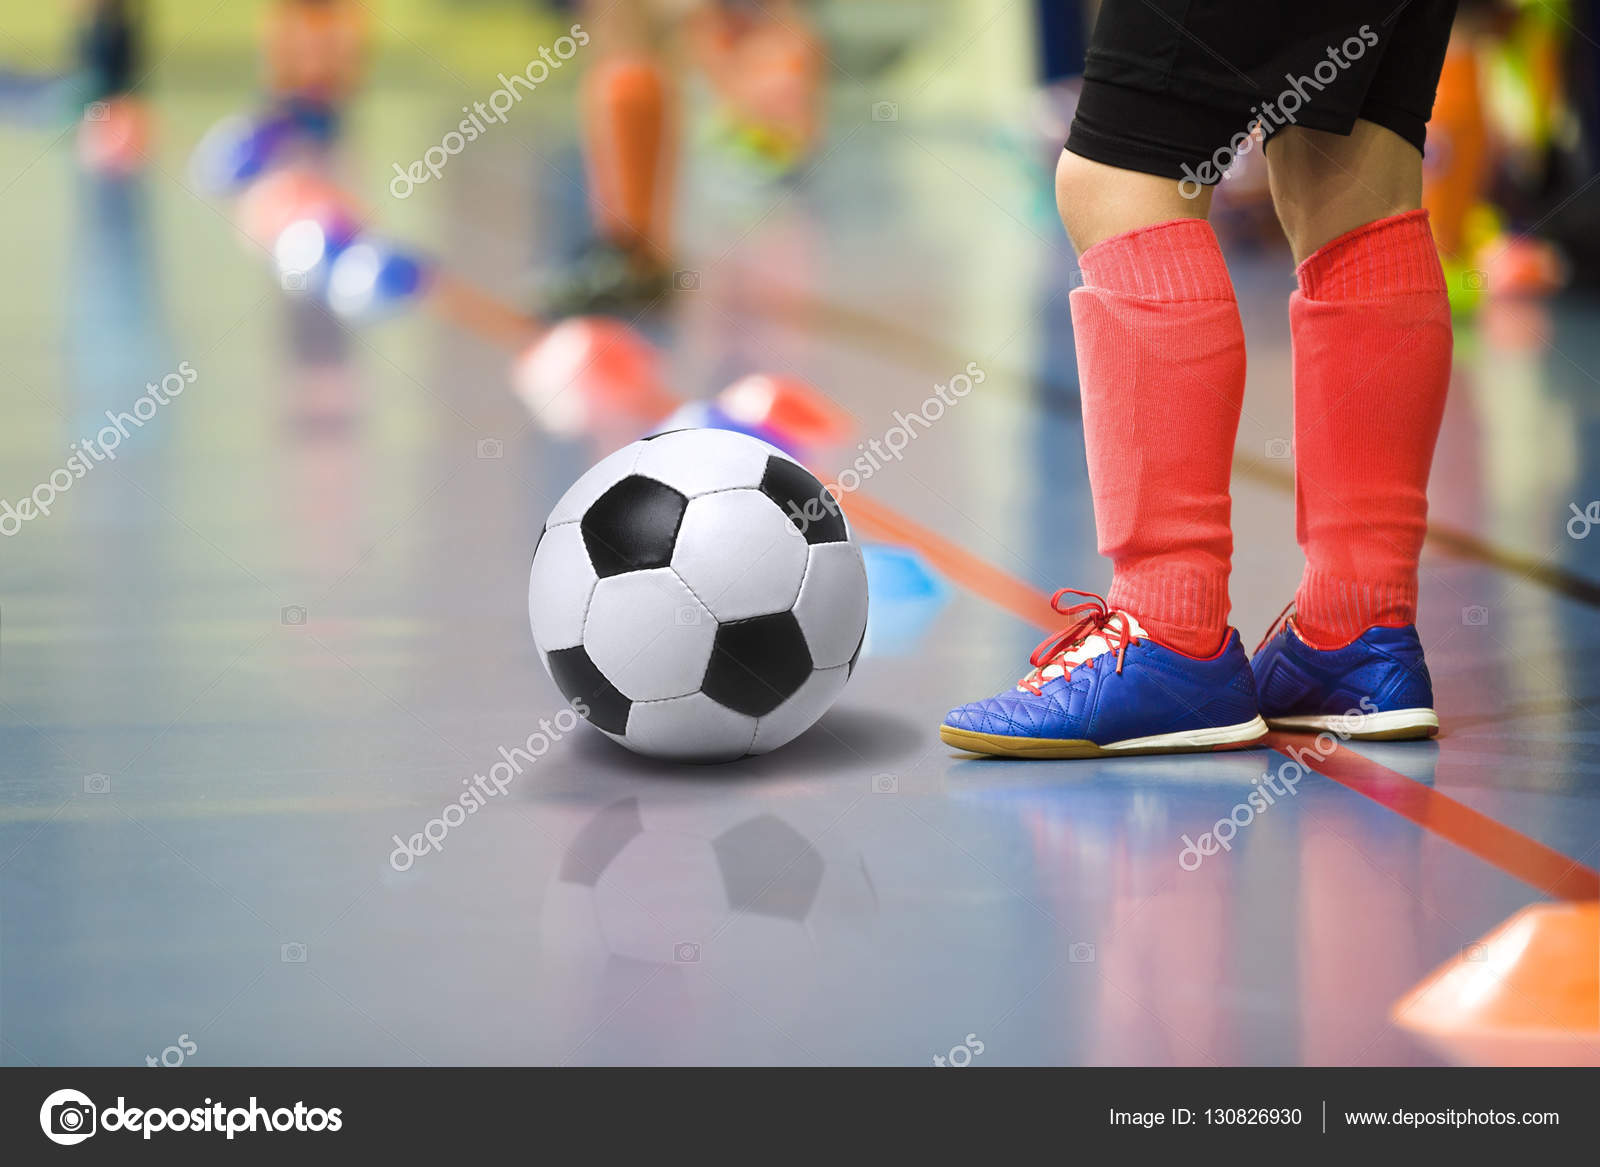 Fútbol futsal pelota y hombre jugador de equipo fútbol sala